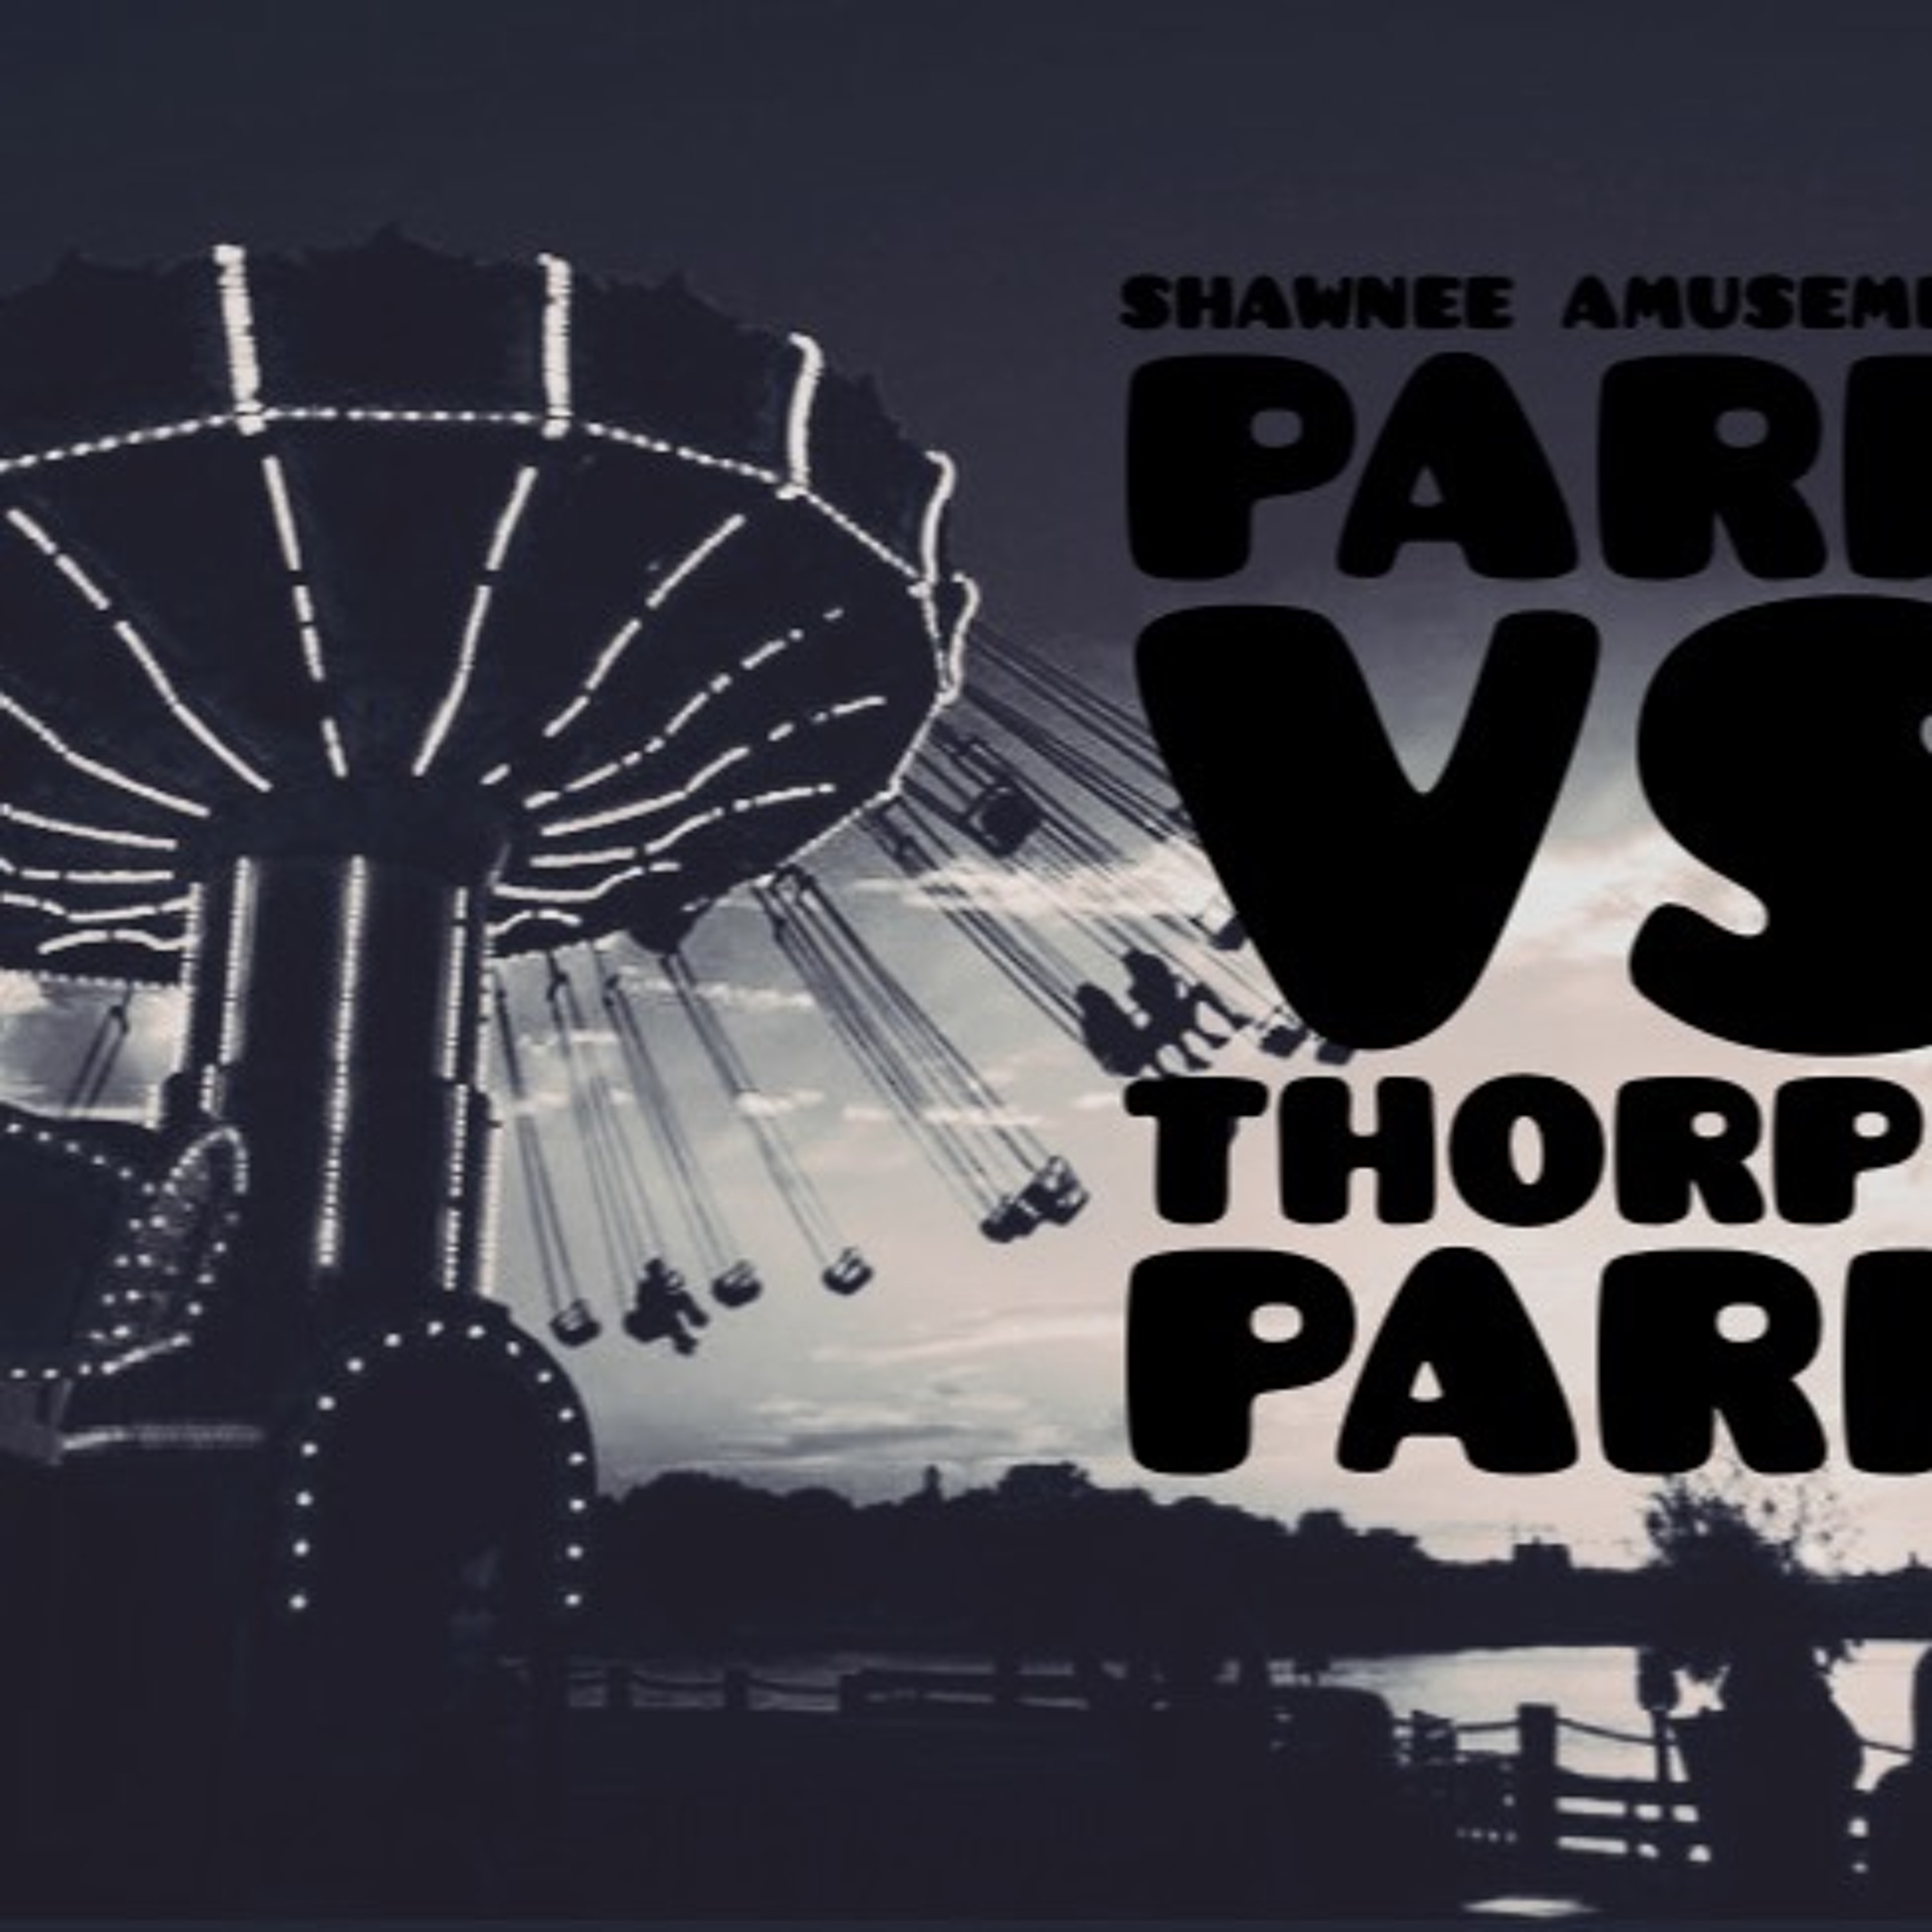 Episode 5 - Shawnee Amusement park vs. Thorpe Park